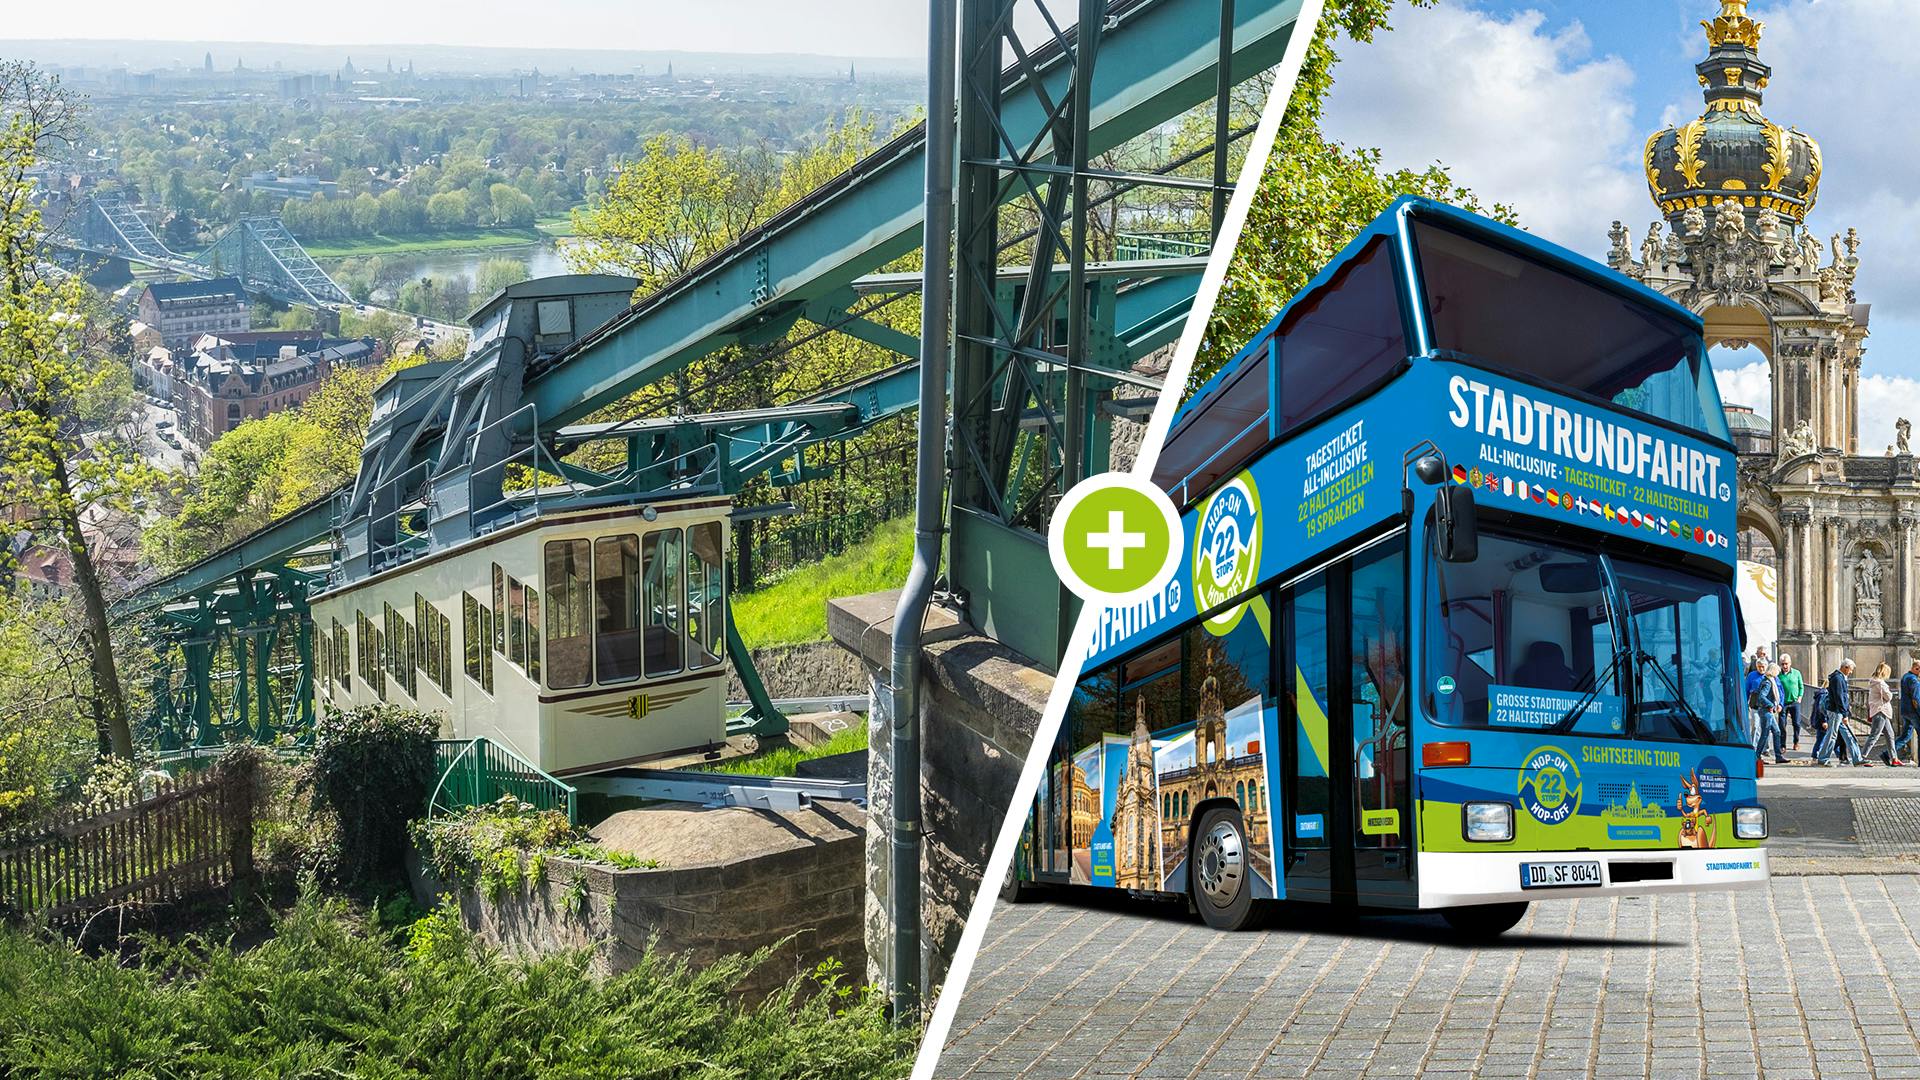 Panoramatour durch Dresden mit Bergbahn und Hop-on-Hop-off-Bus